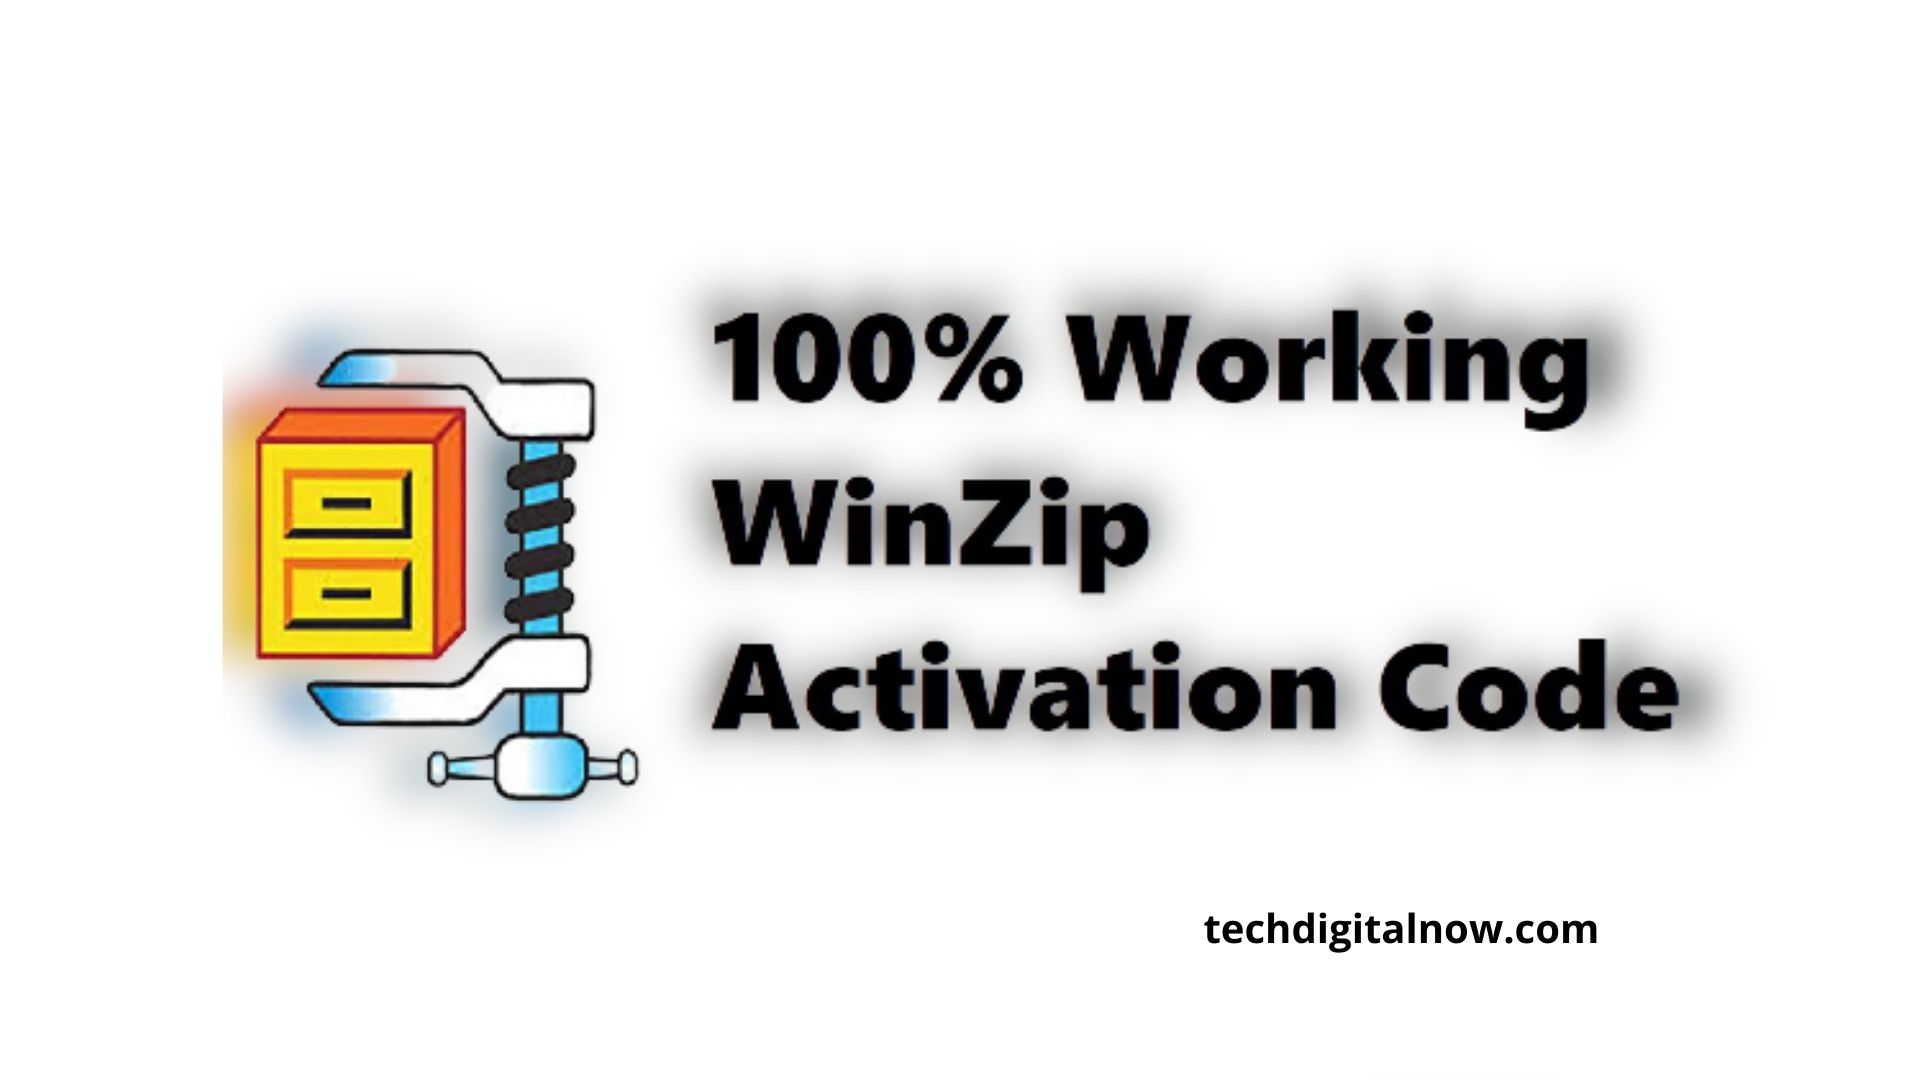 winzip 15 activation code free download